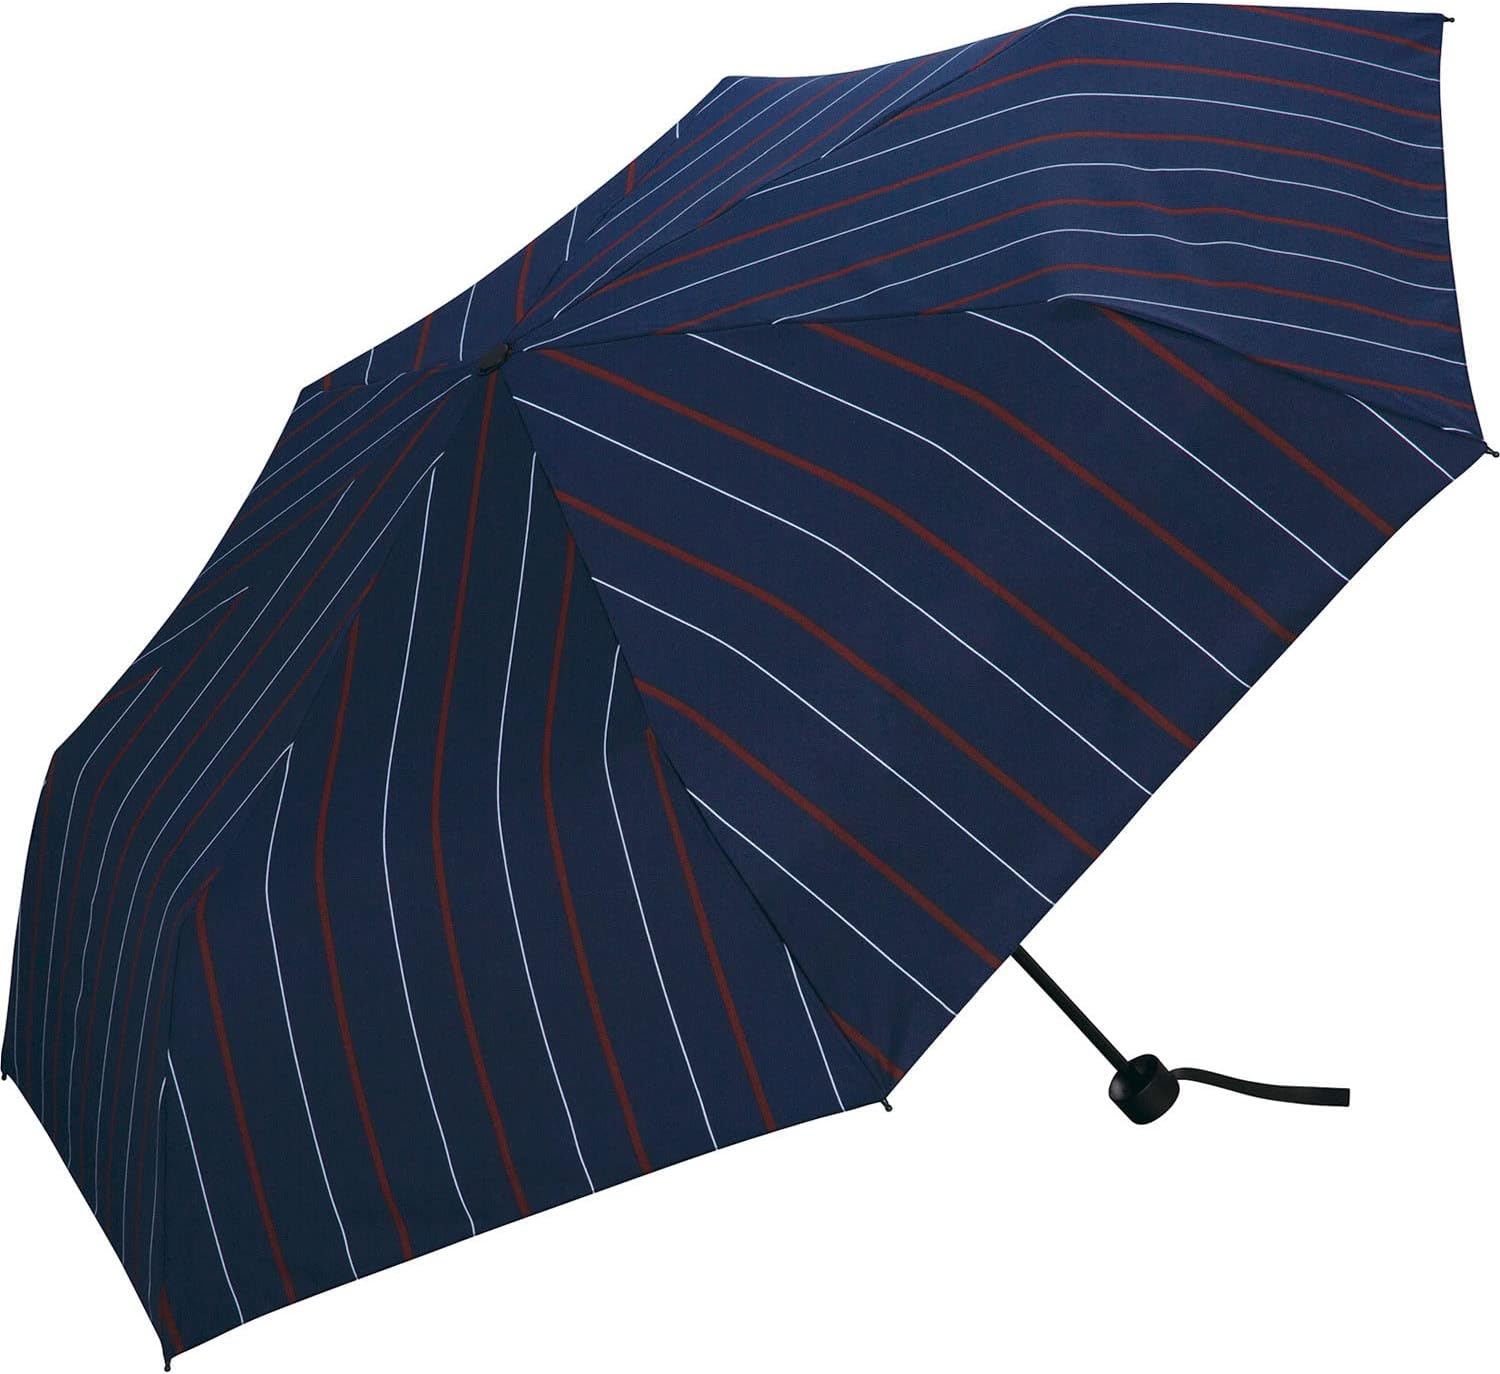 【2023年】Wpc. 雨傘 UNISEX WIND RESISTANCE FOLDING ストライプ 折りたたみ傘 65cm レディース メンズ 晴雨兼用 大きい 耐風 26m/s 風に強い UX003-041-002 [ストライプ]